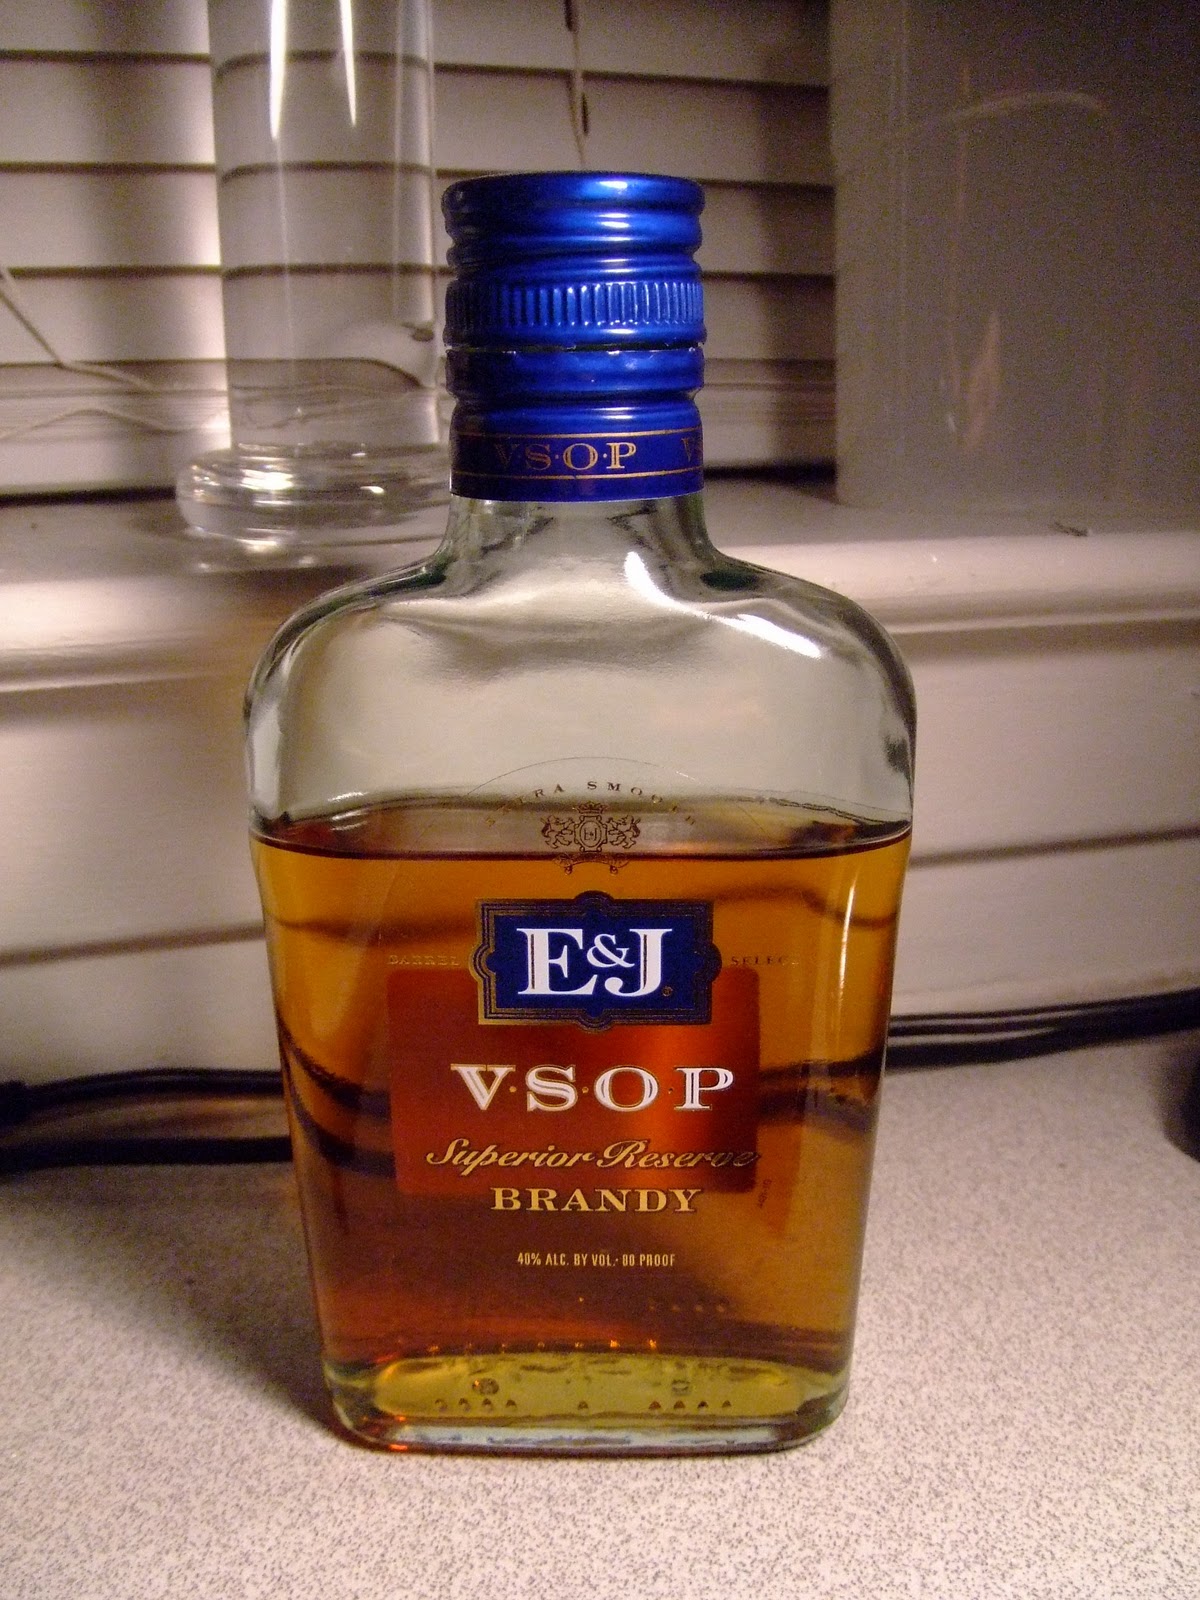 E&j VSOP Brandy